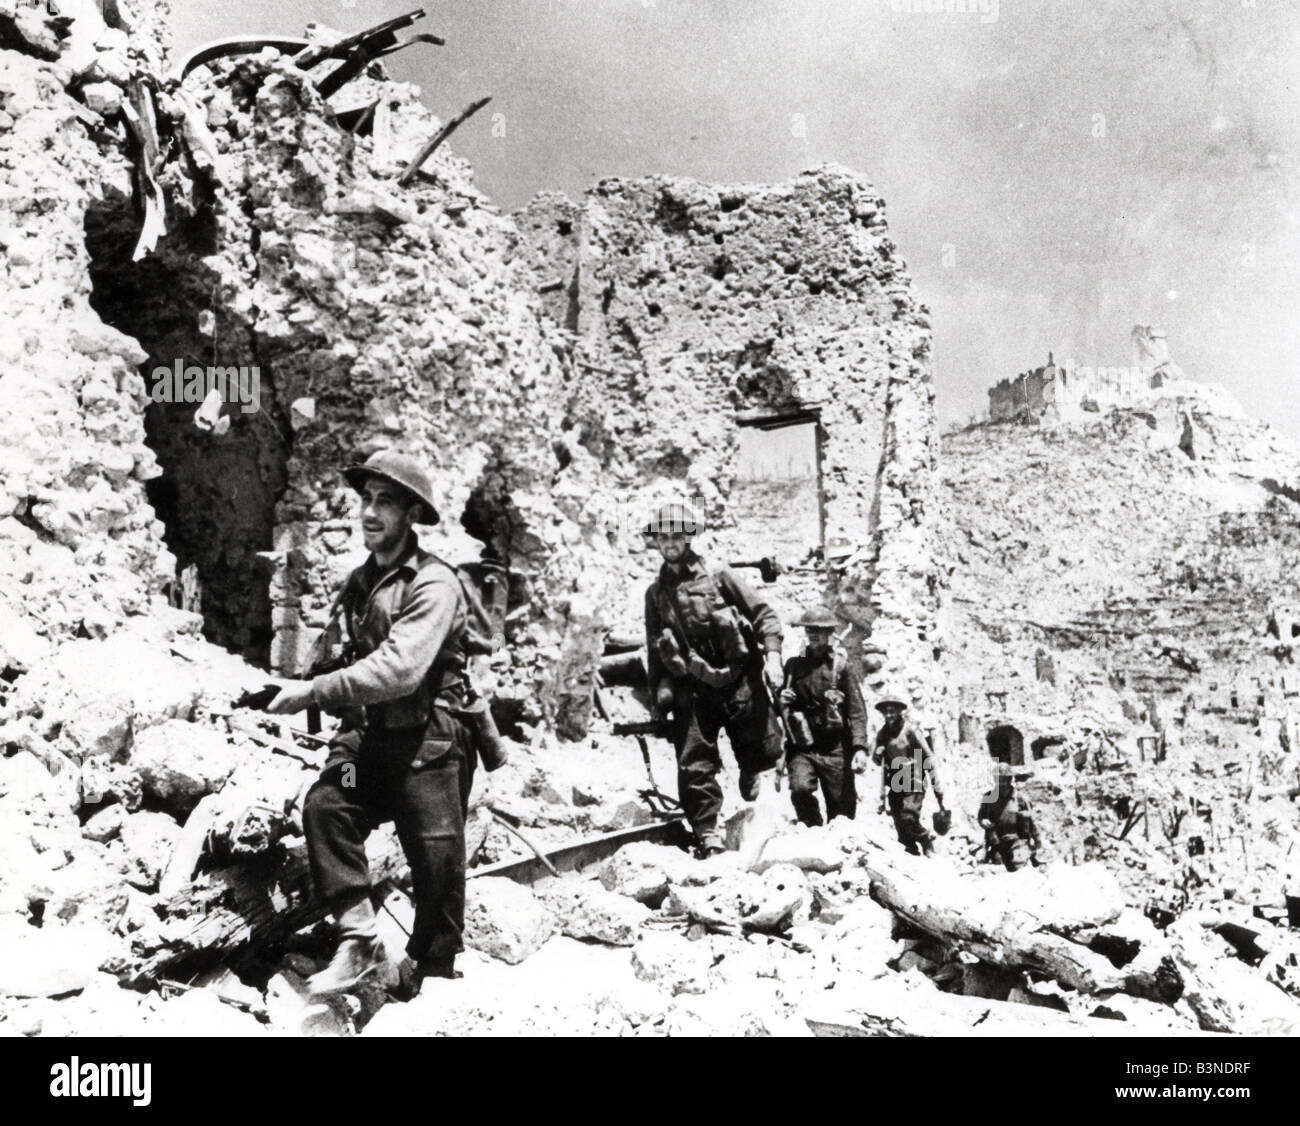 Bataille de Monte Cassino - 1944 soldats britanniques y prendre chemin à travers les ruines après la capitulation allemande Banque D'Images